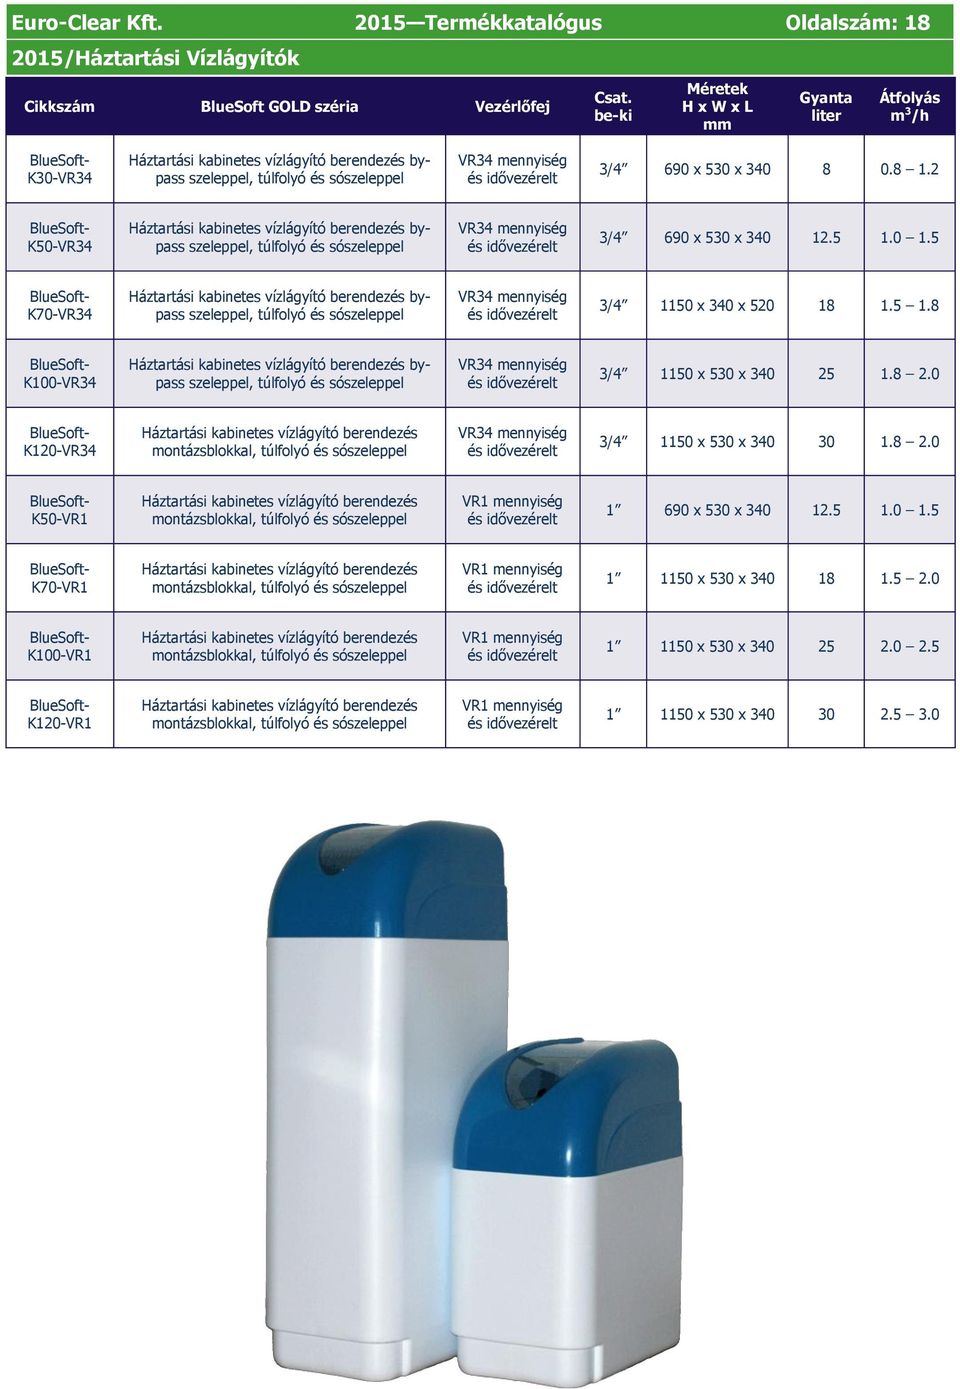 2 K50-VR34 Háztartási kabinetes vízlágyító berendezés bypass szeleppel, túlfolyó és sószeleppel VR34 mennyiség 3/4 690 x 530 x 340 12